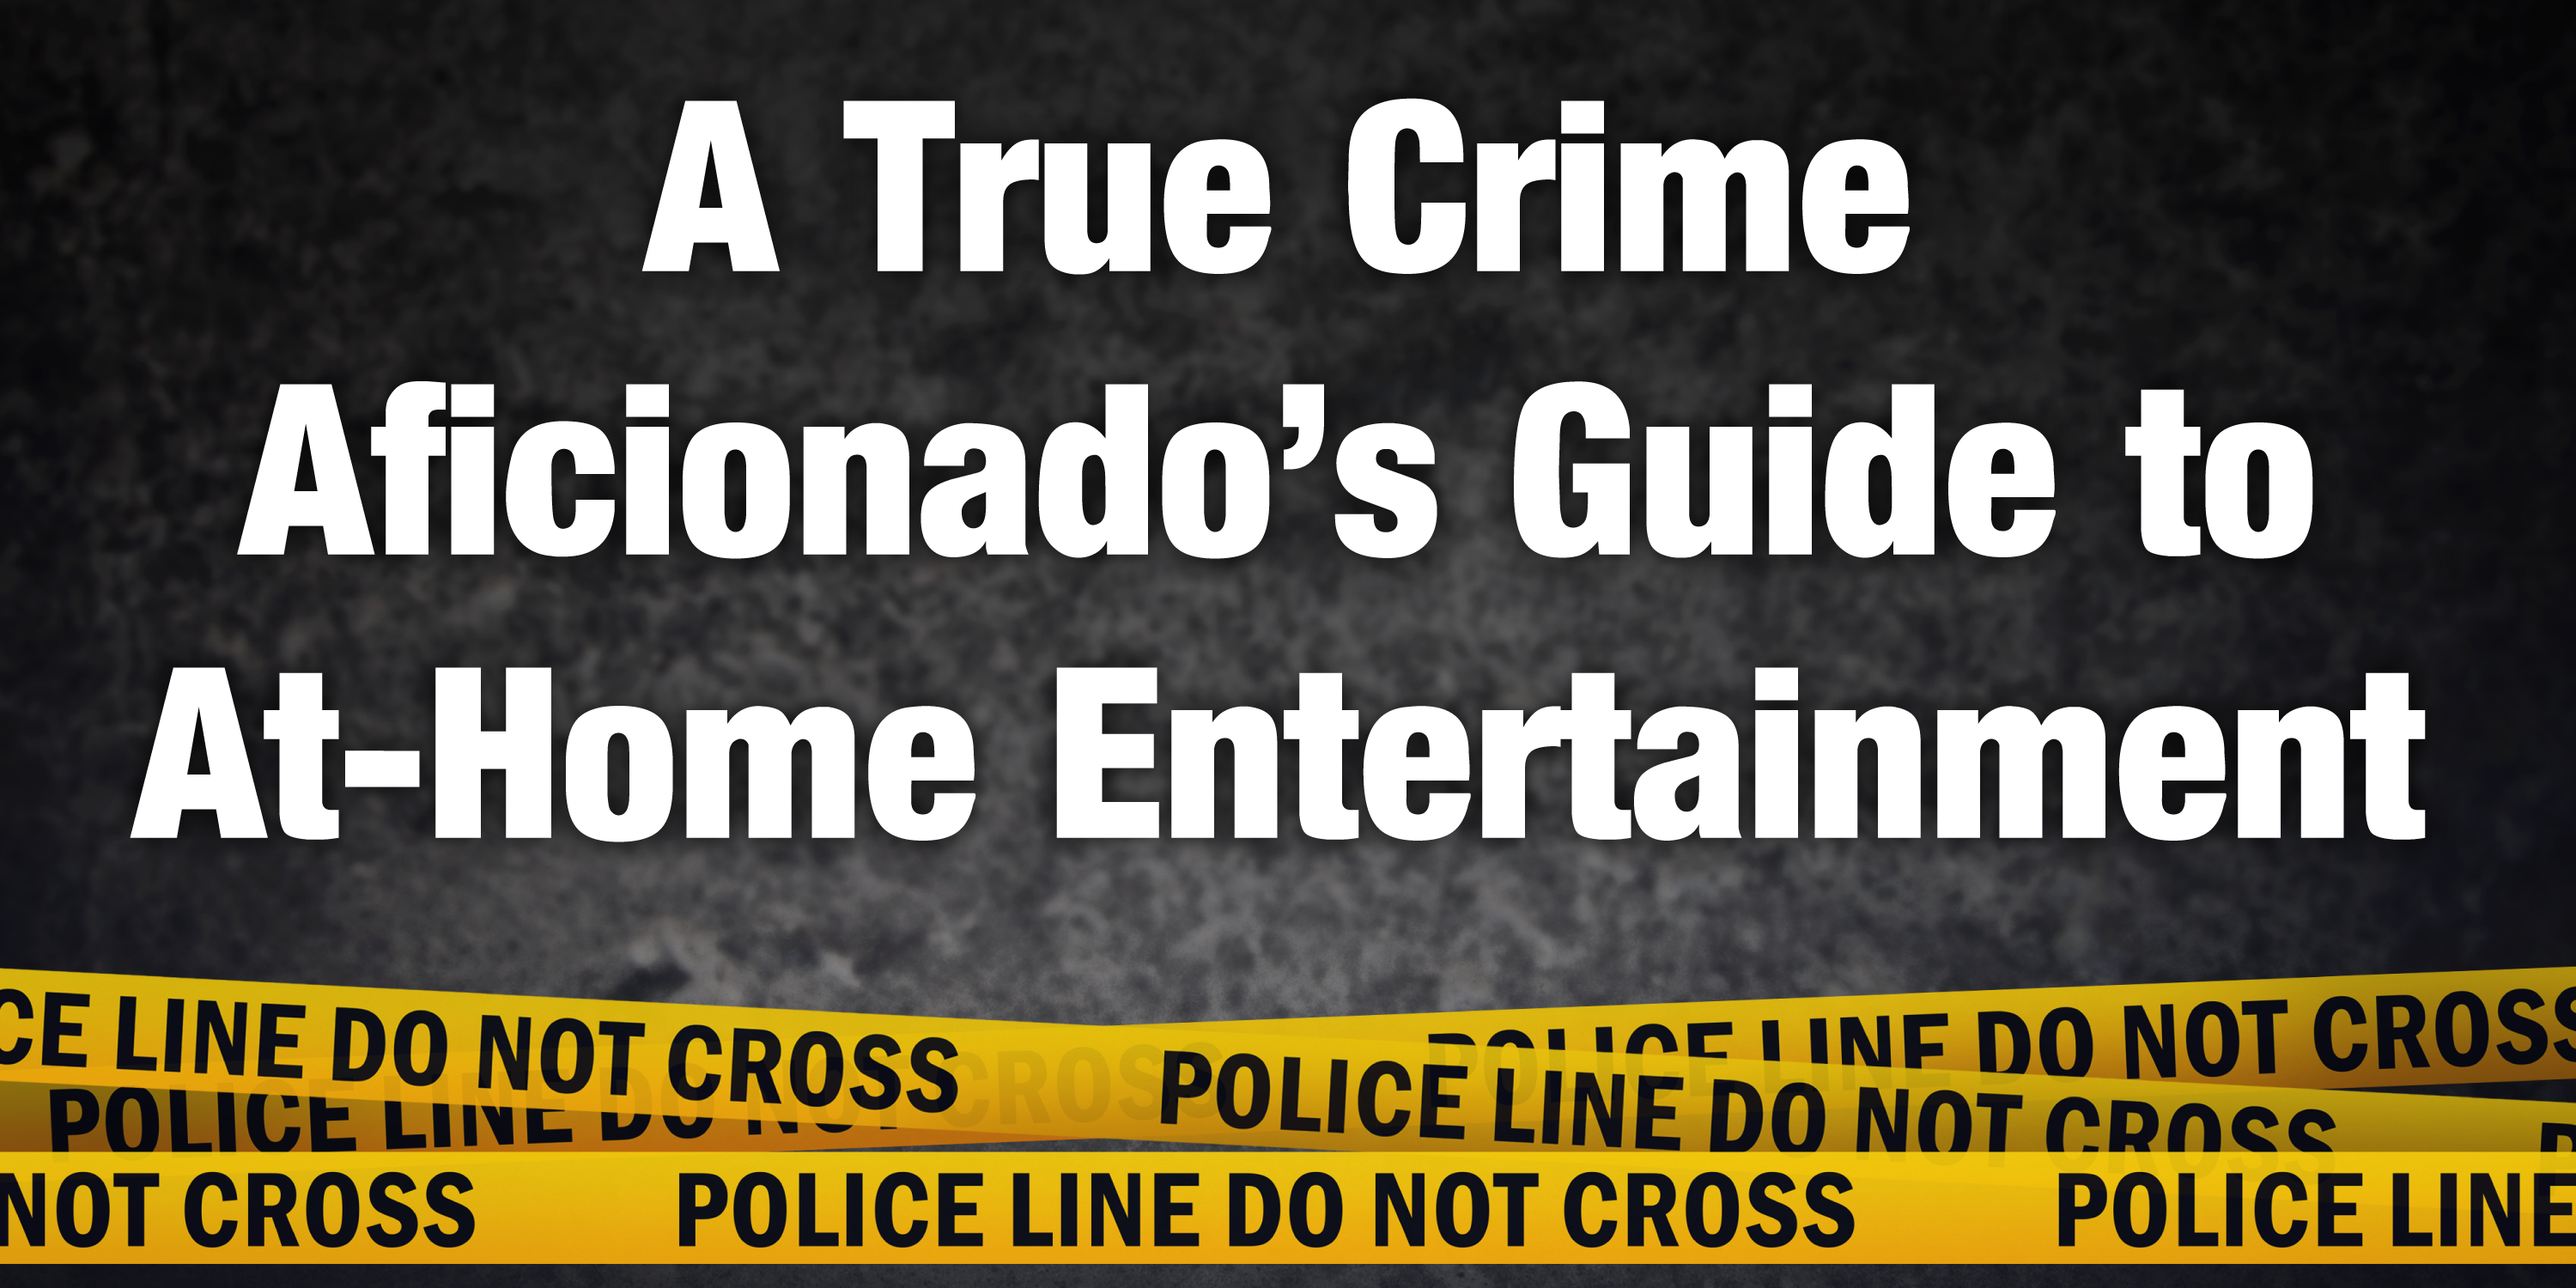 A True Crime Aficionado’s Guide to At-Home Entertainment